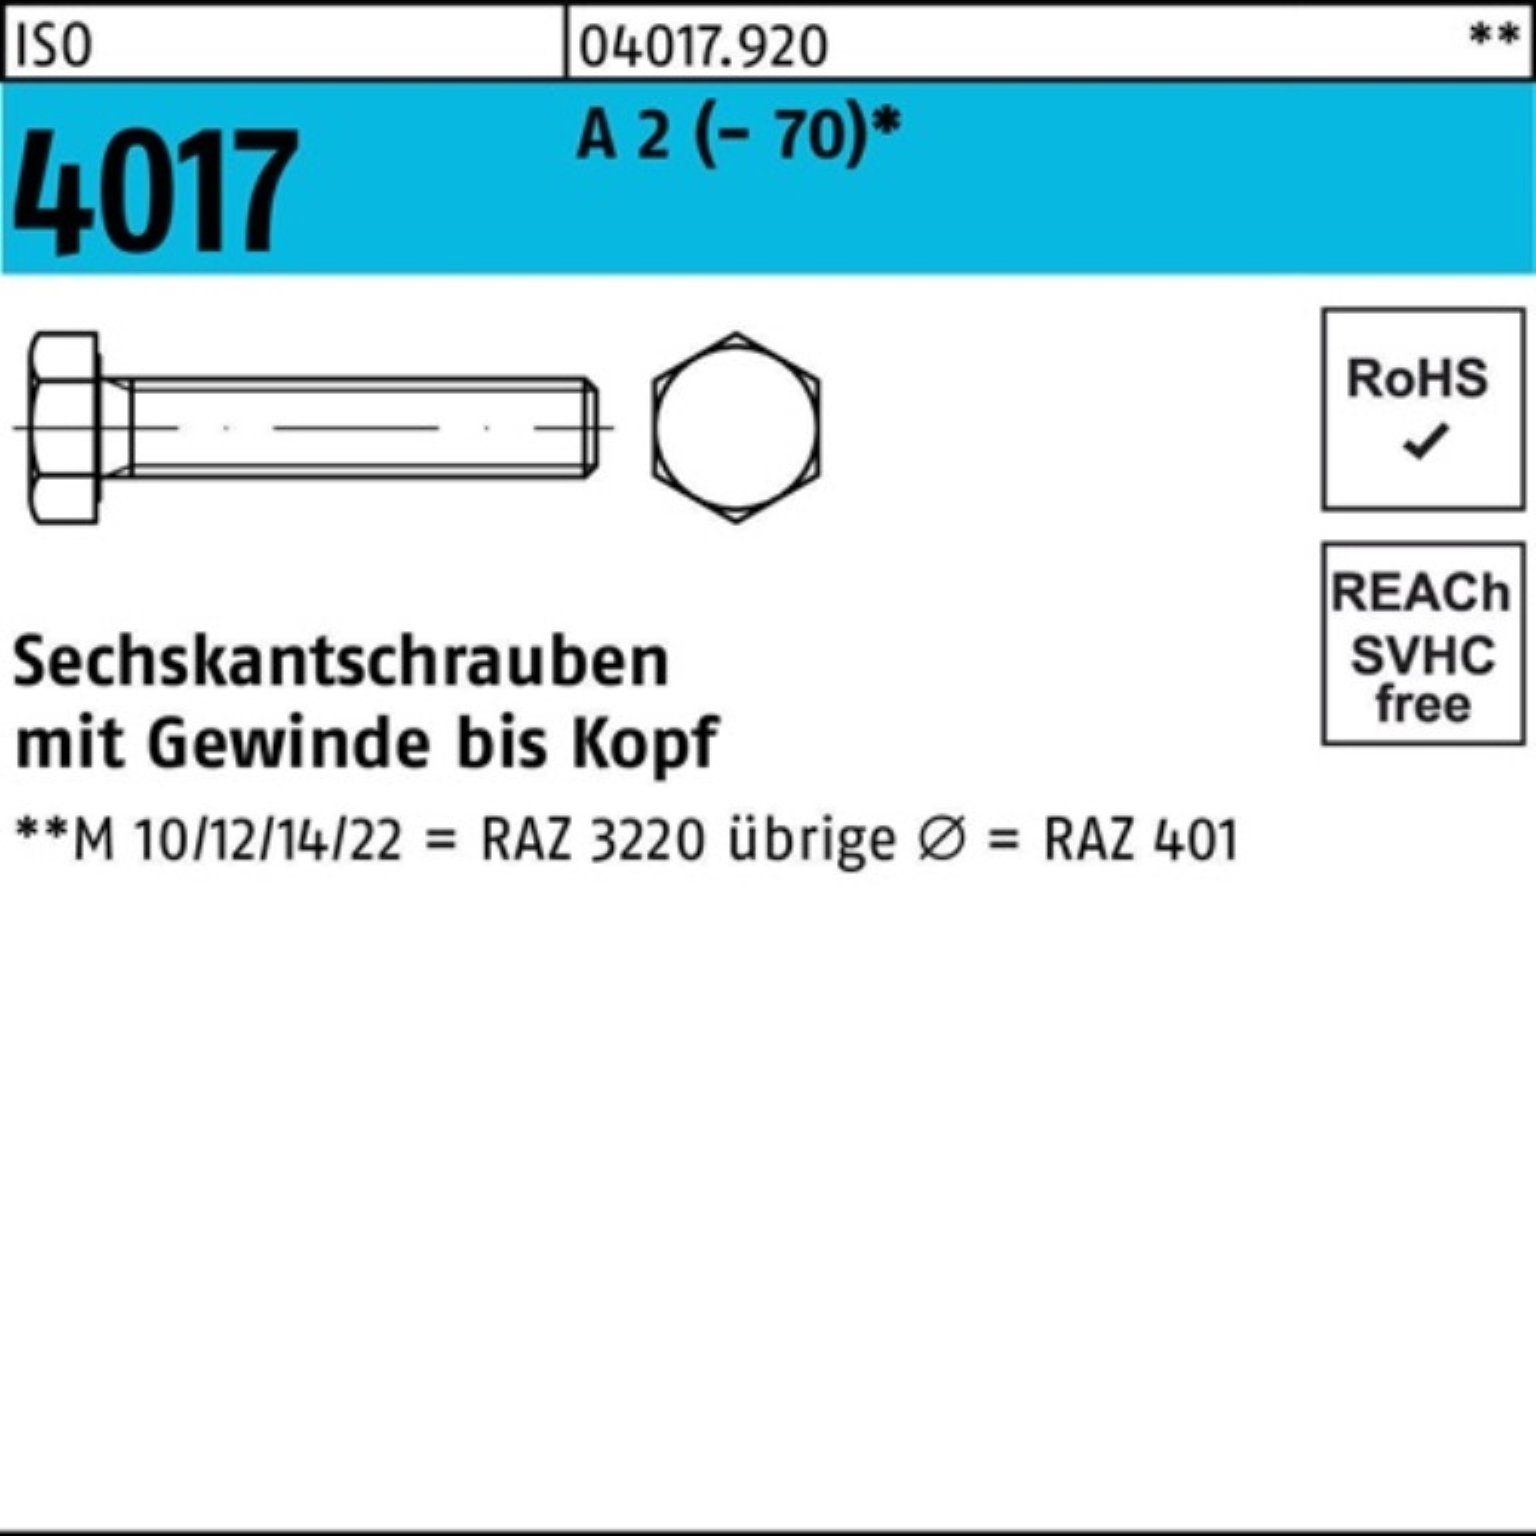 Bufab Sechskantschraube A Pack ISO 10 150 VG Stück 100er M20x Sechskantschraube 4017 (70) 2